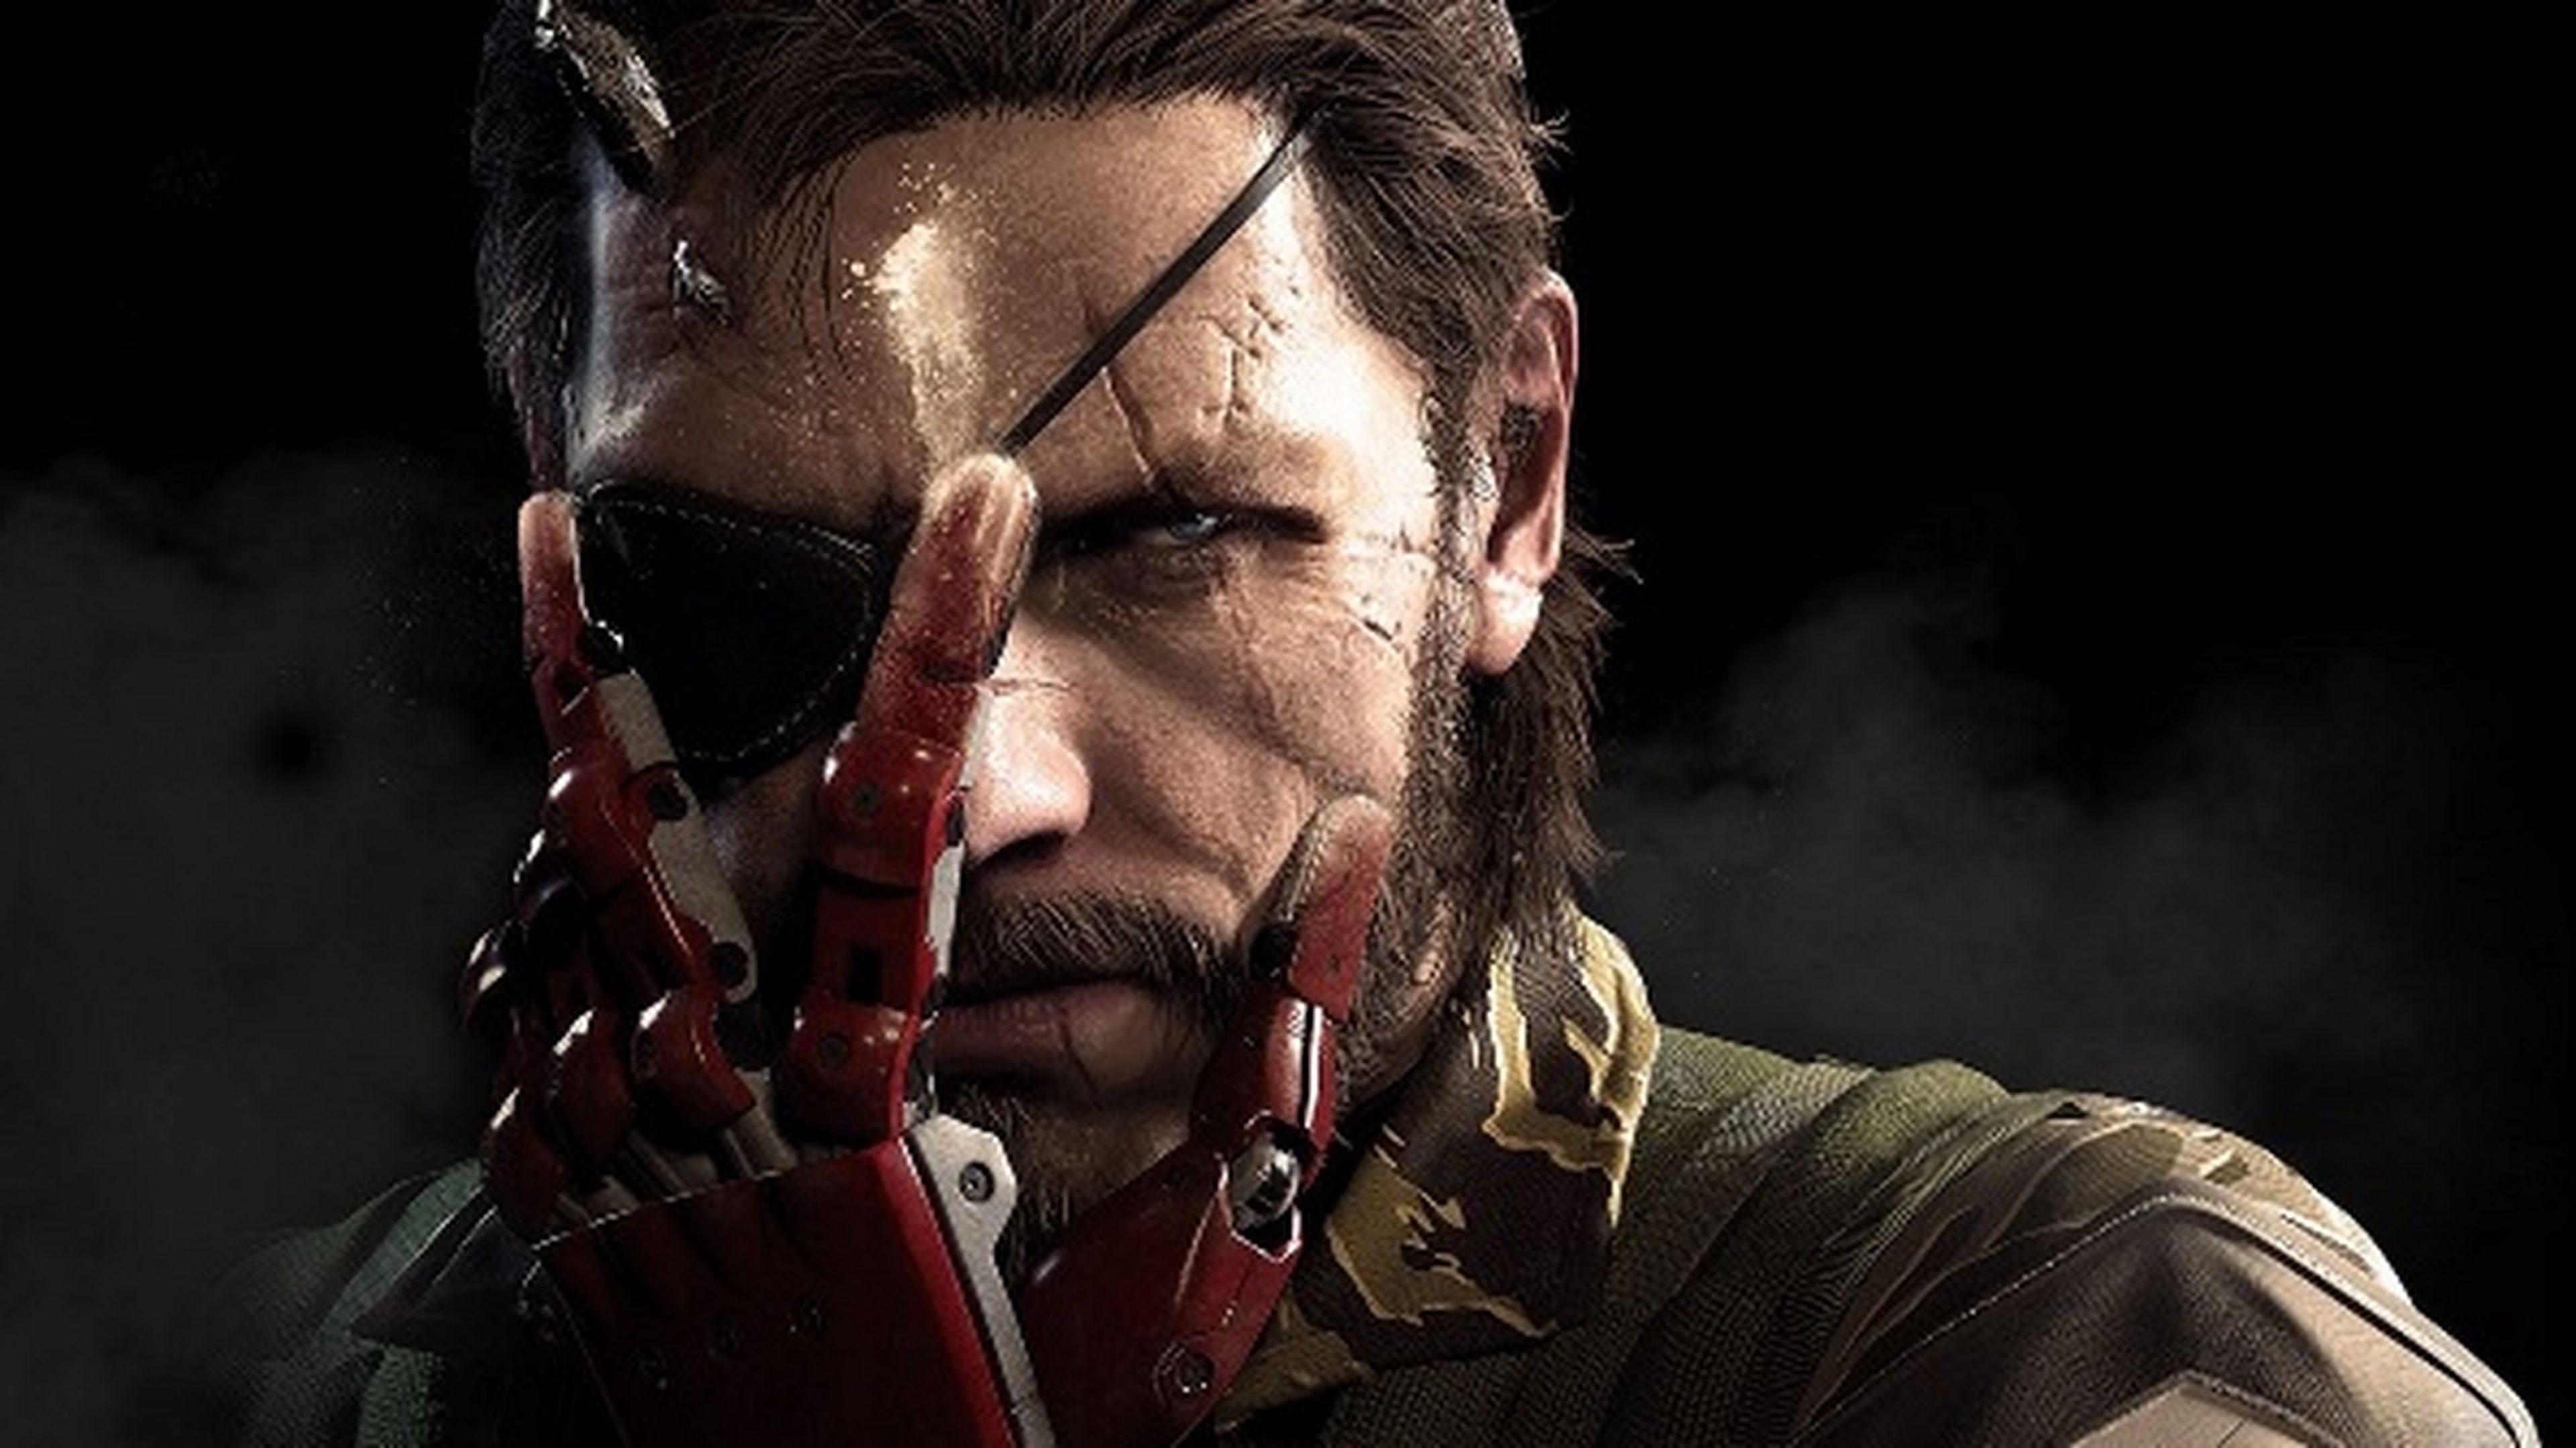 Metal Gear Solid V The Phantom Pain casi agotado en su primera semana